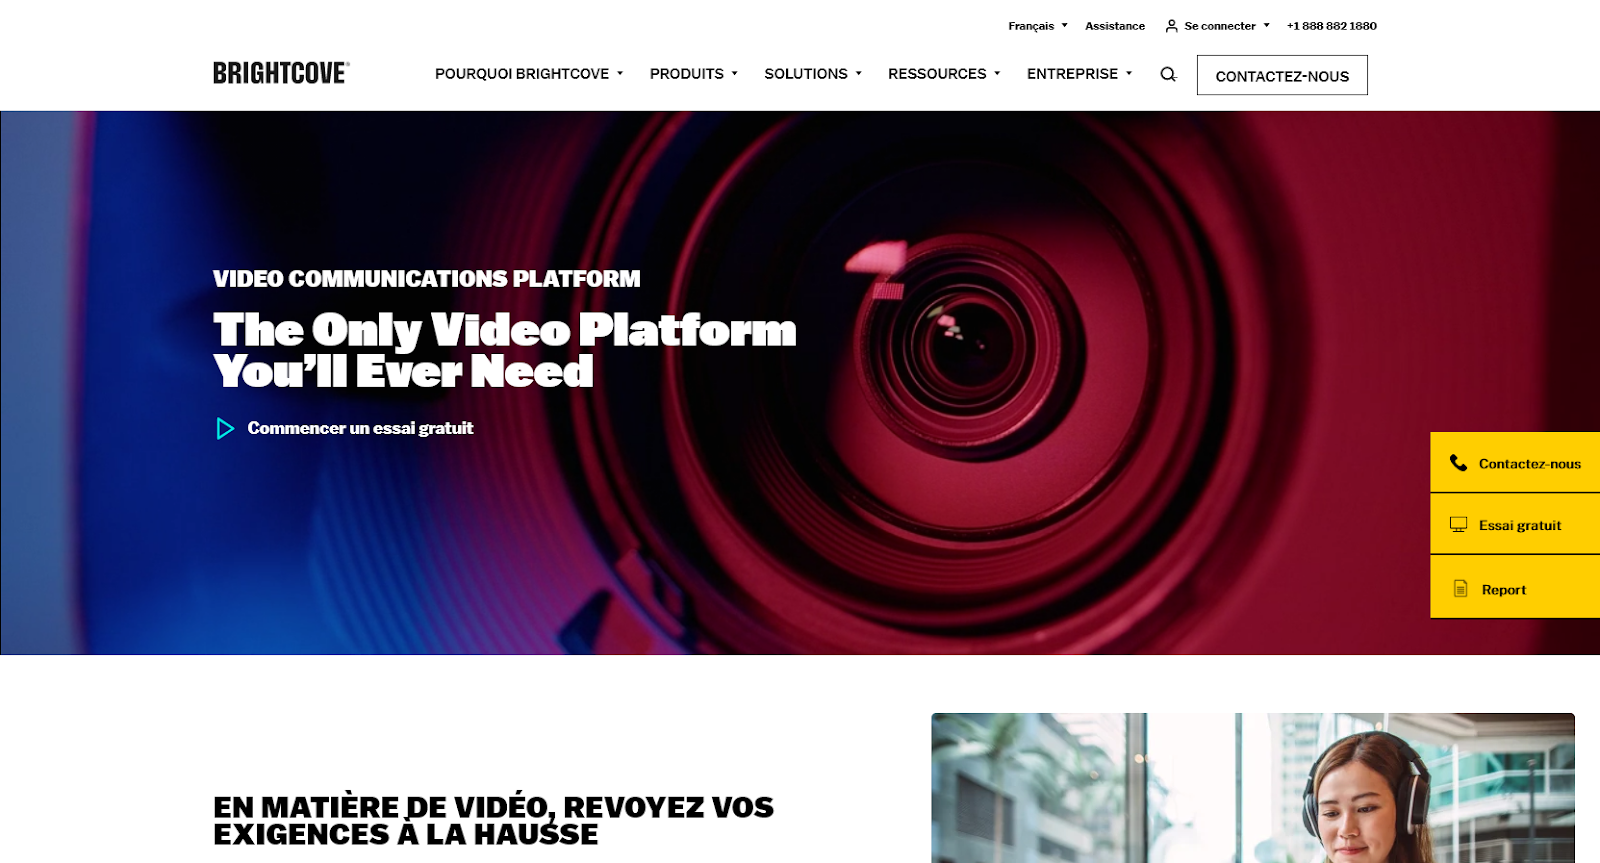 Brightcove Video Cloud hébergeur vidéo des grandes entreprises